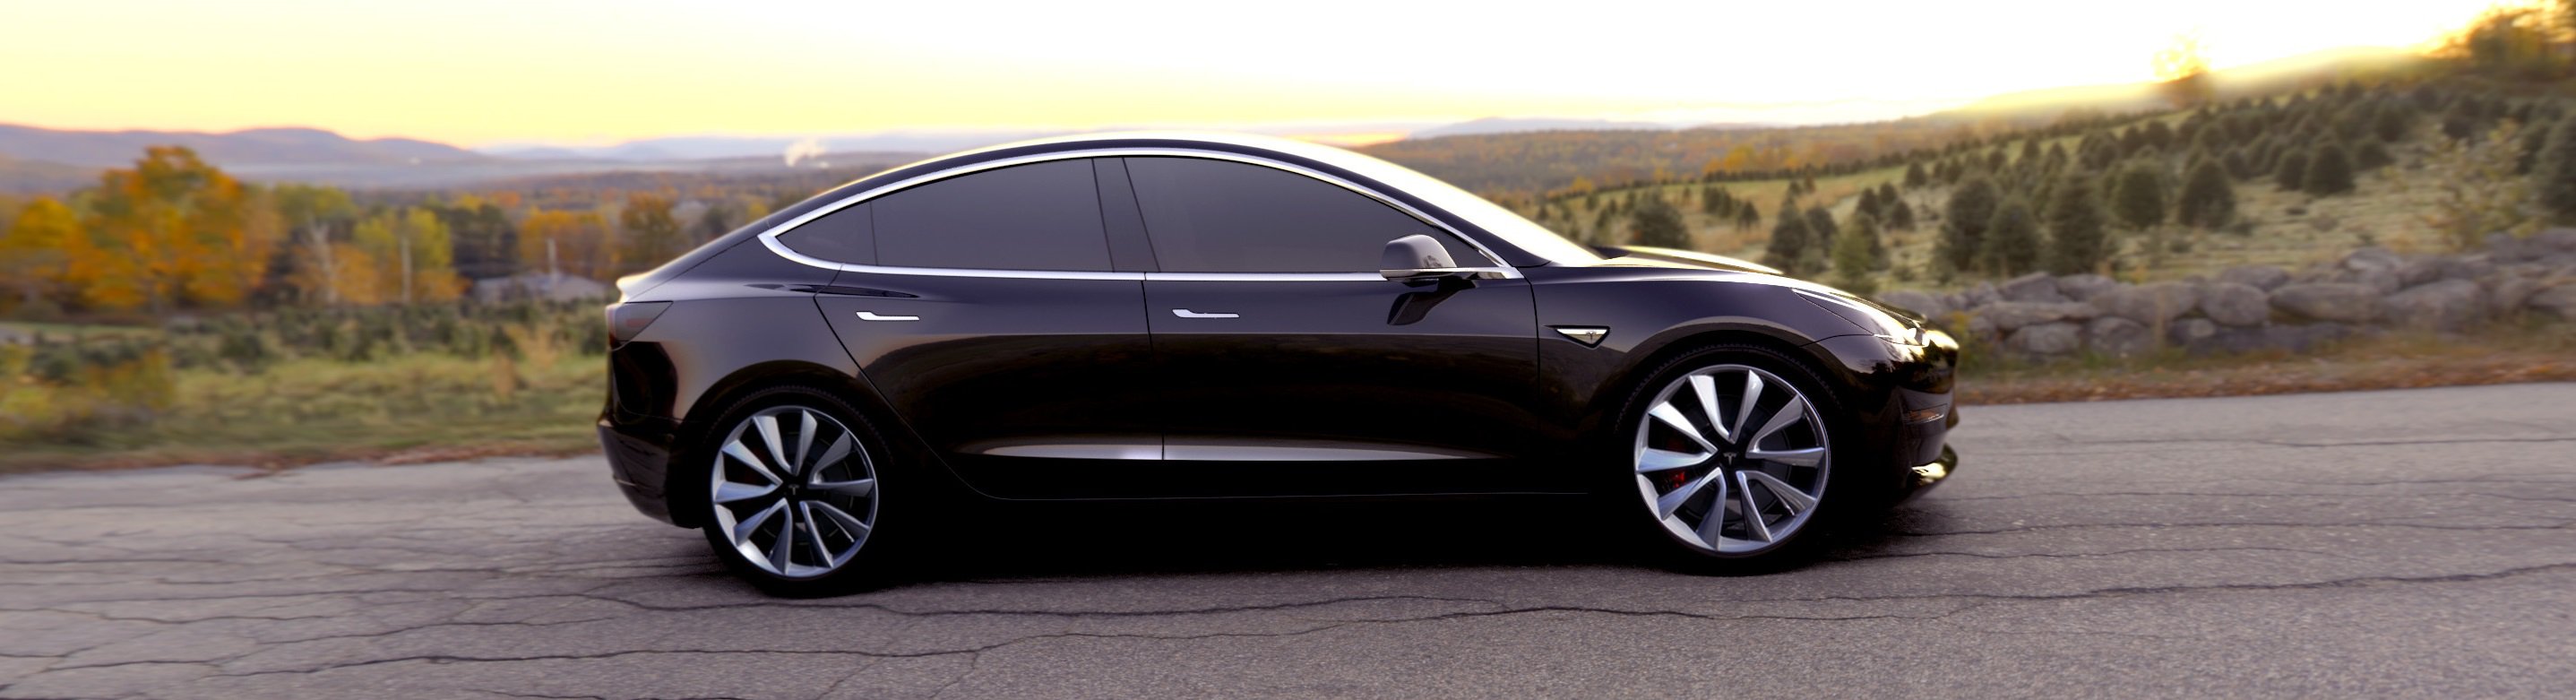 Tesla Model 3 samochód po który ustawiają się kolejki